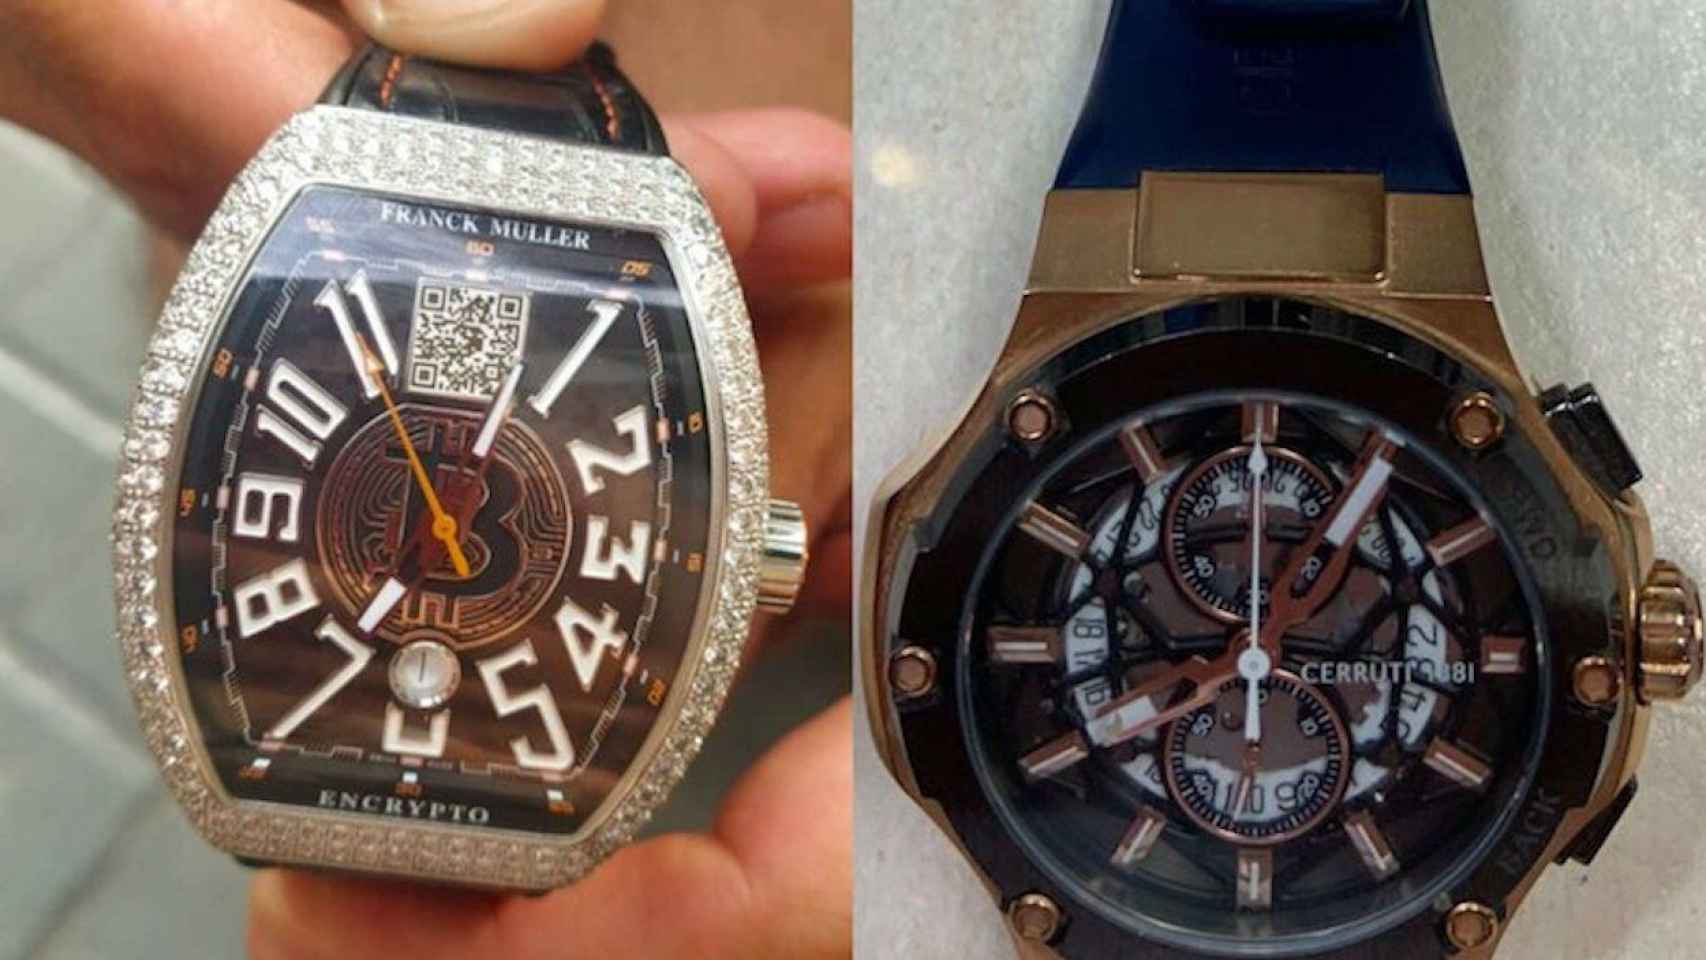 Los relojes valorados en más de 100.000 euros robados el jueves / GUARDIA URBANA